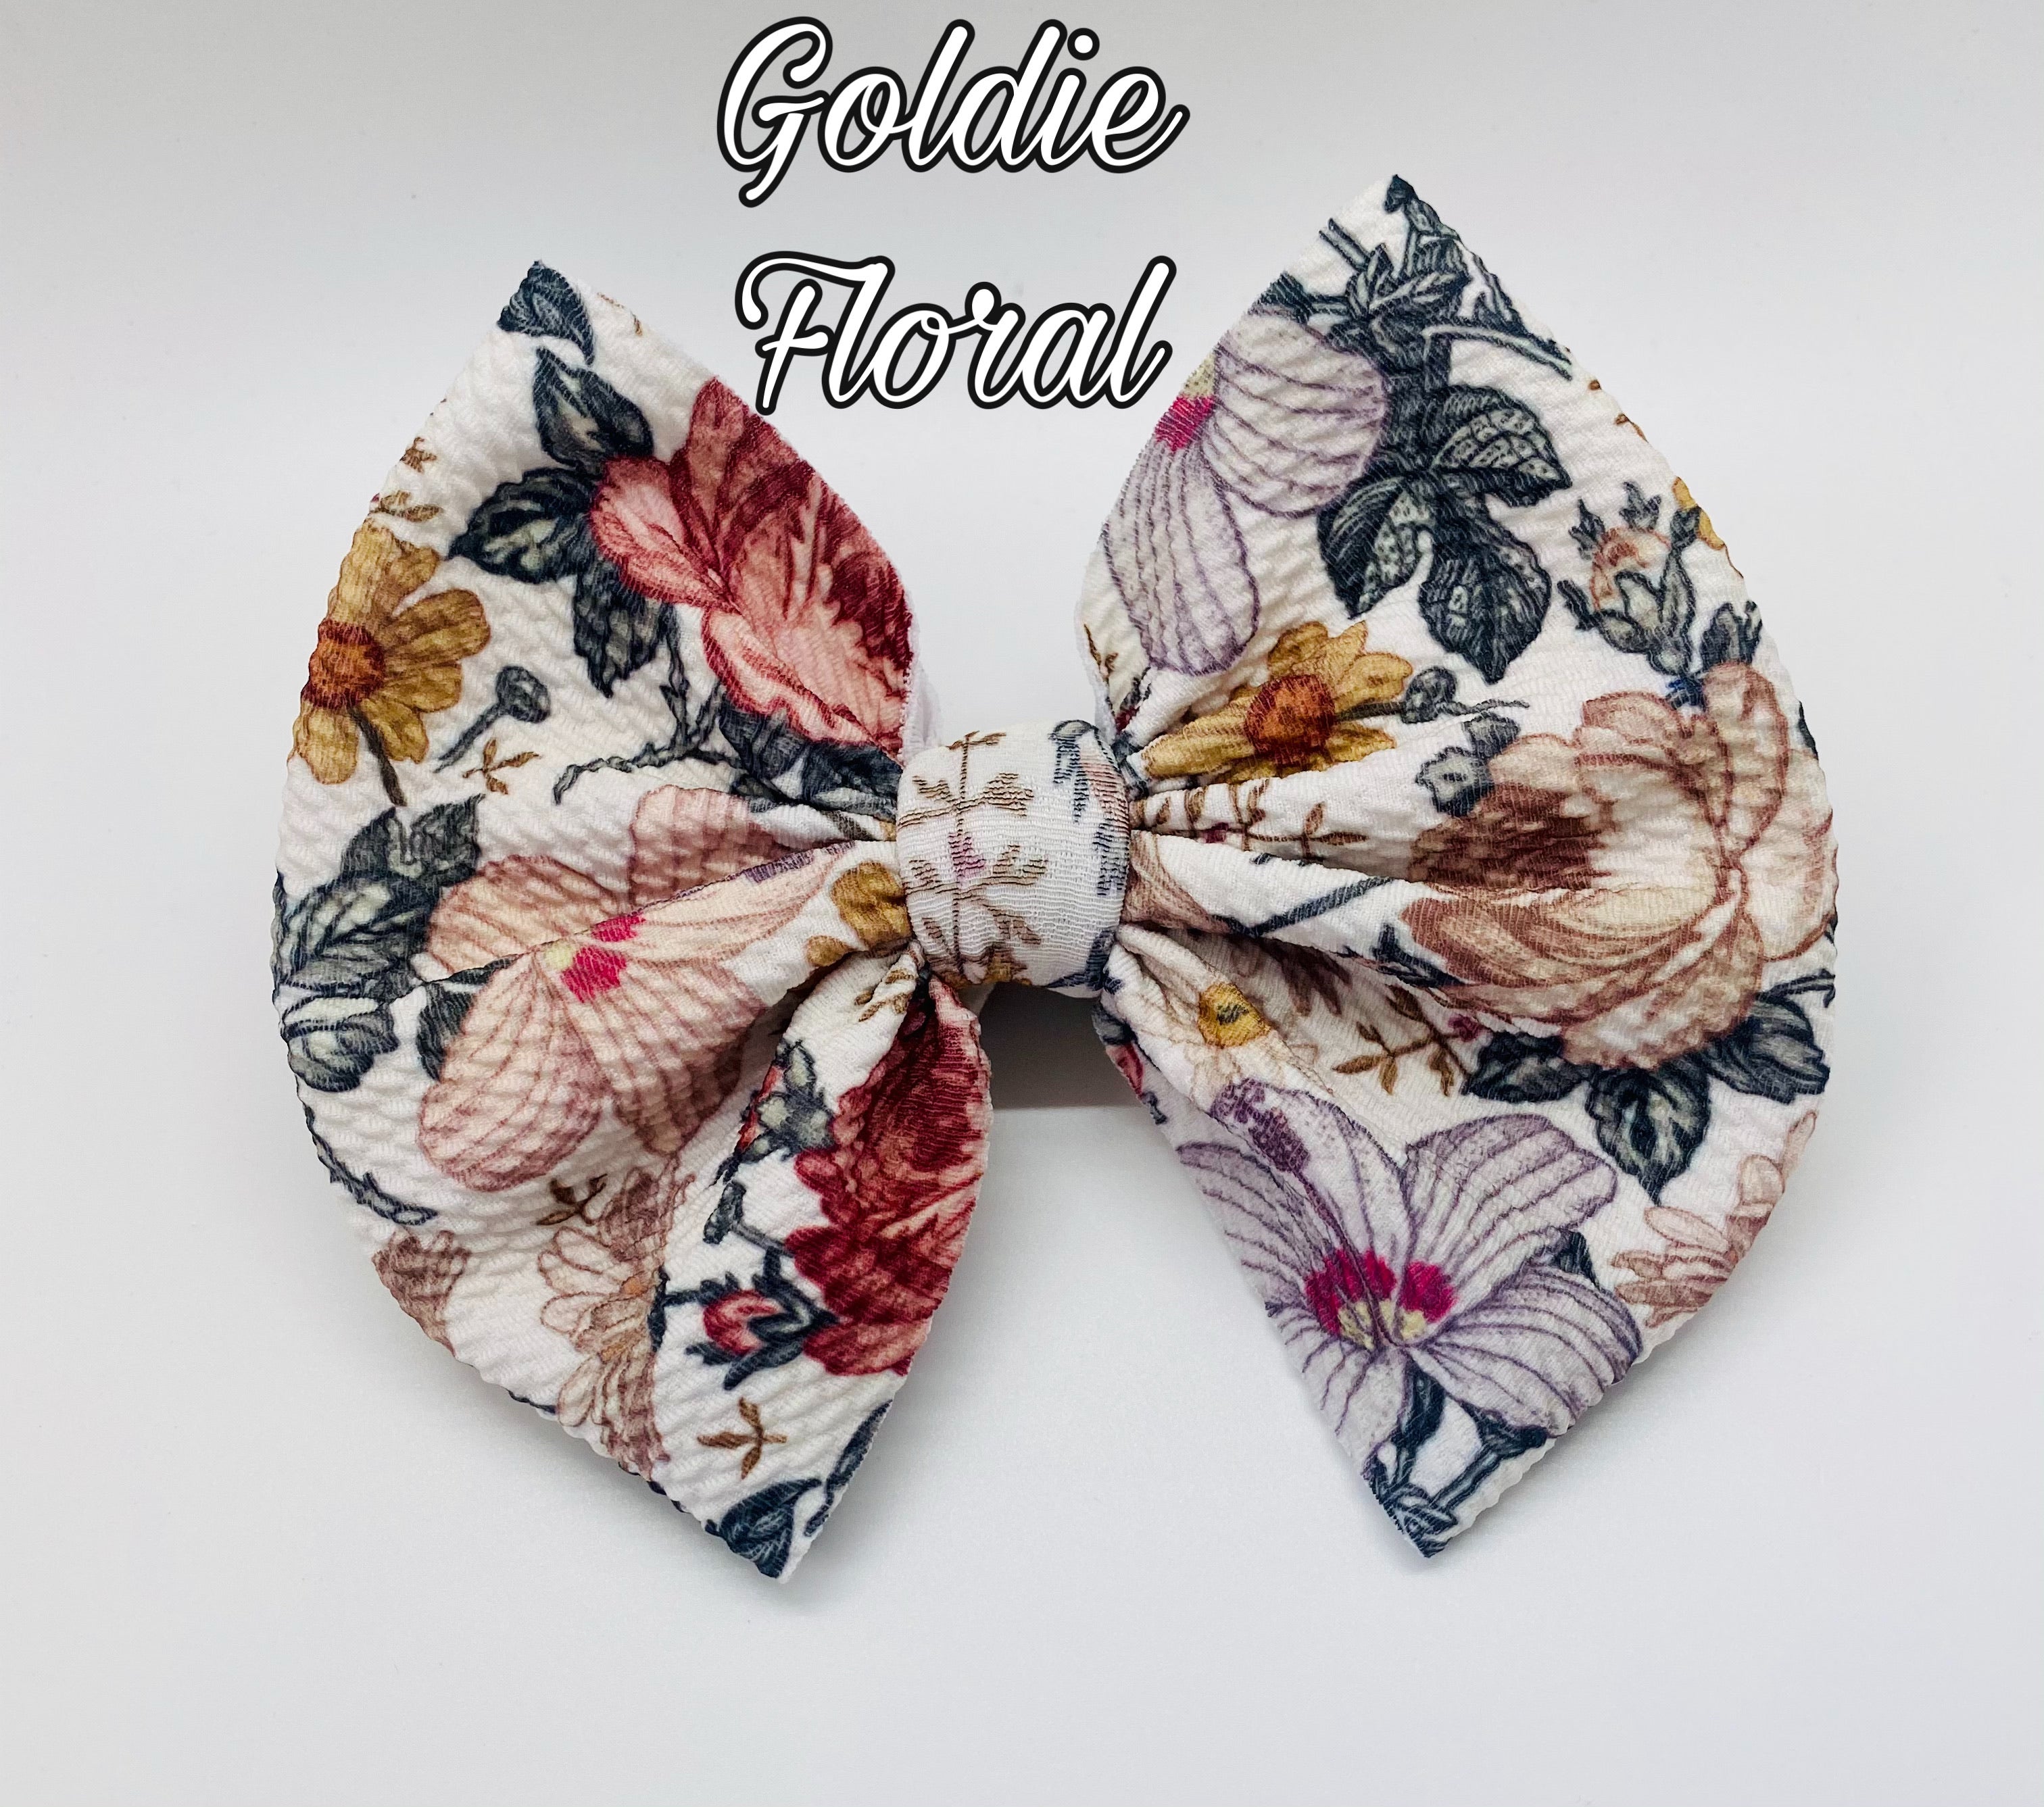 Goldie Floral